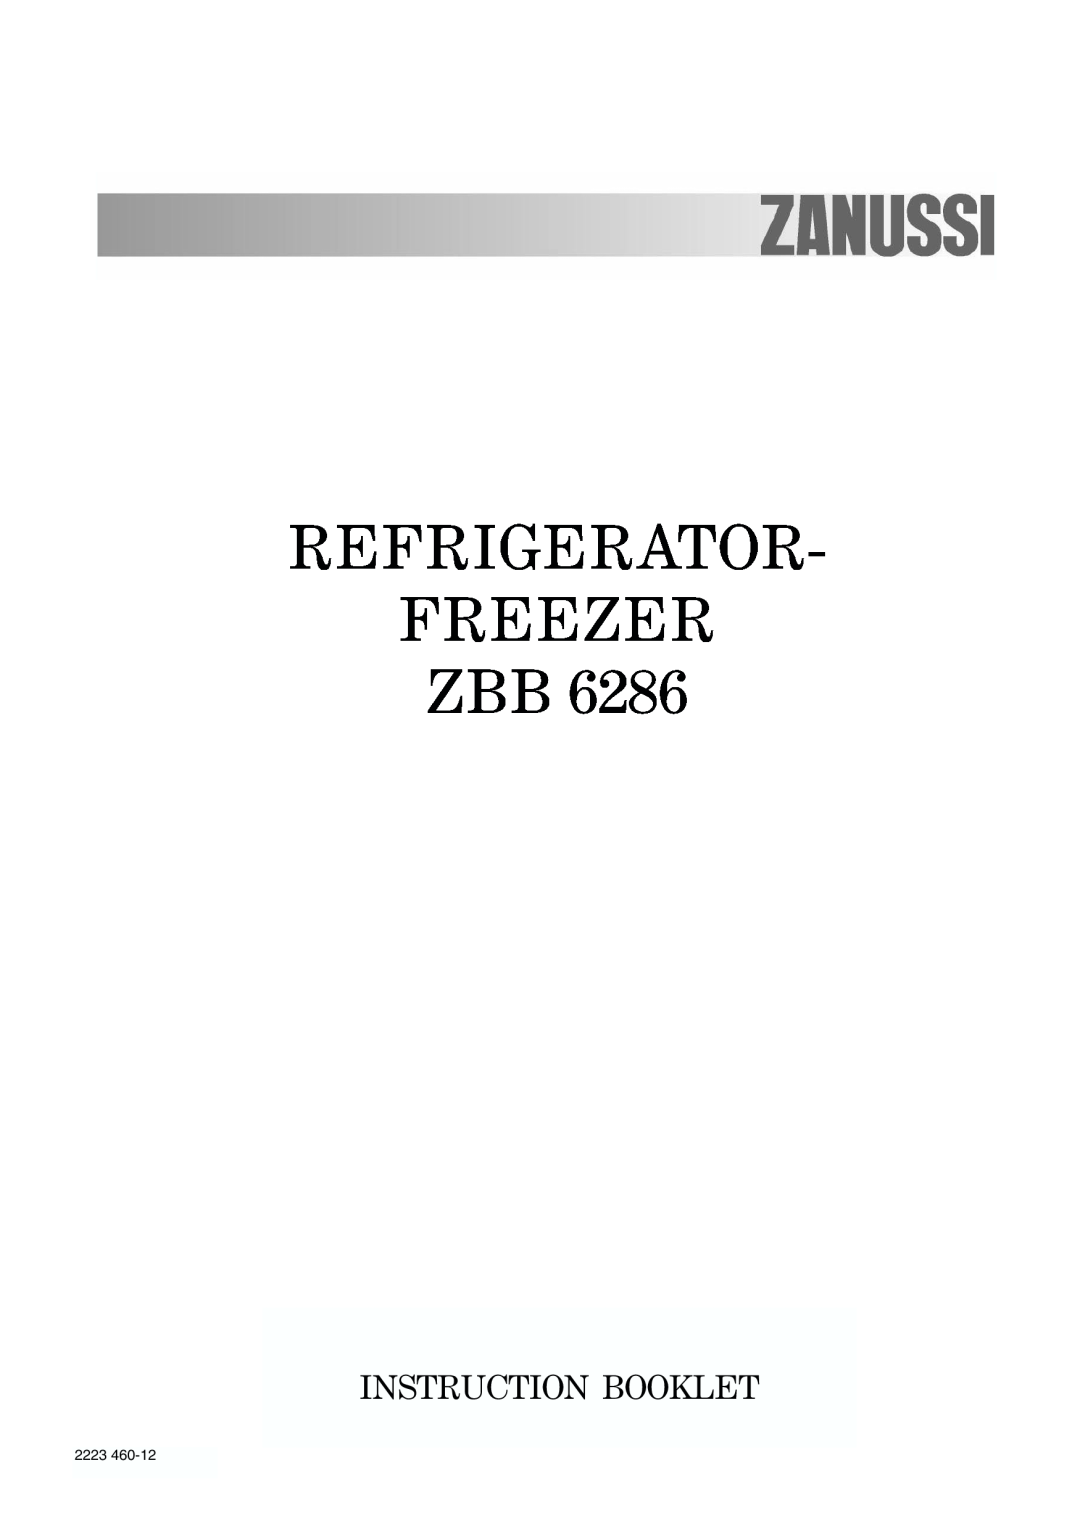 Zanussi ZBB6286 manual Refrigerator Freezer Zbb, Instruction Booklet 